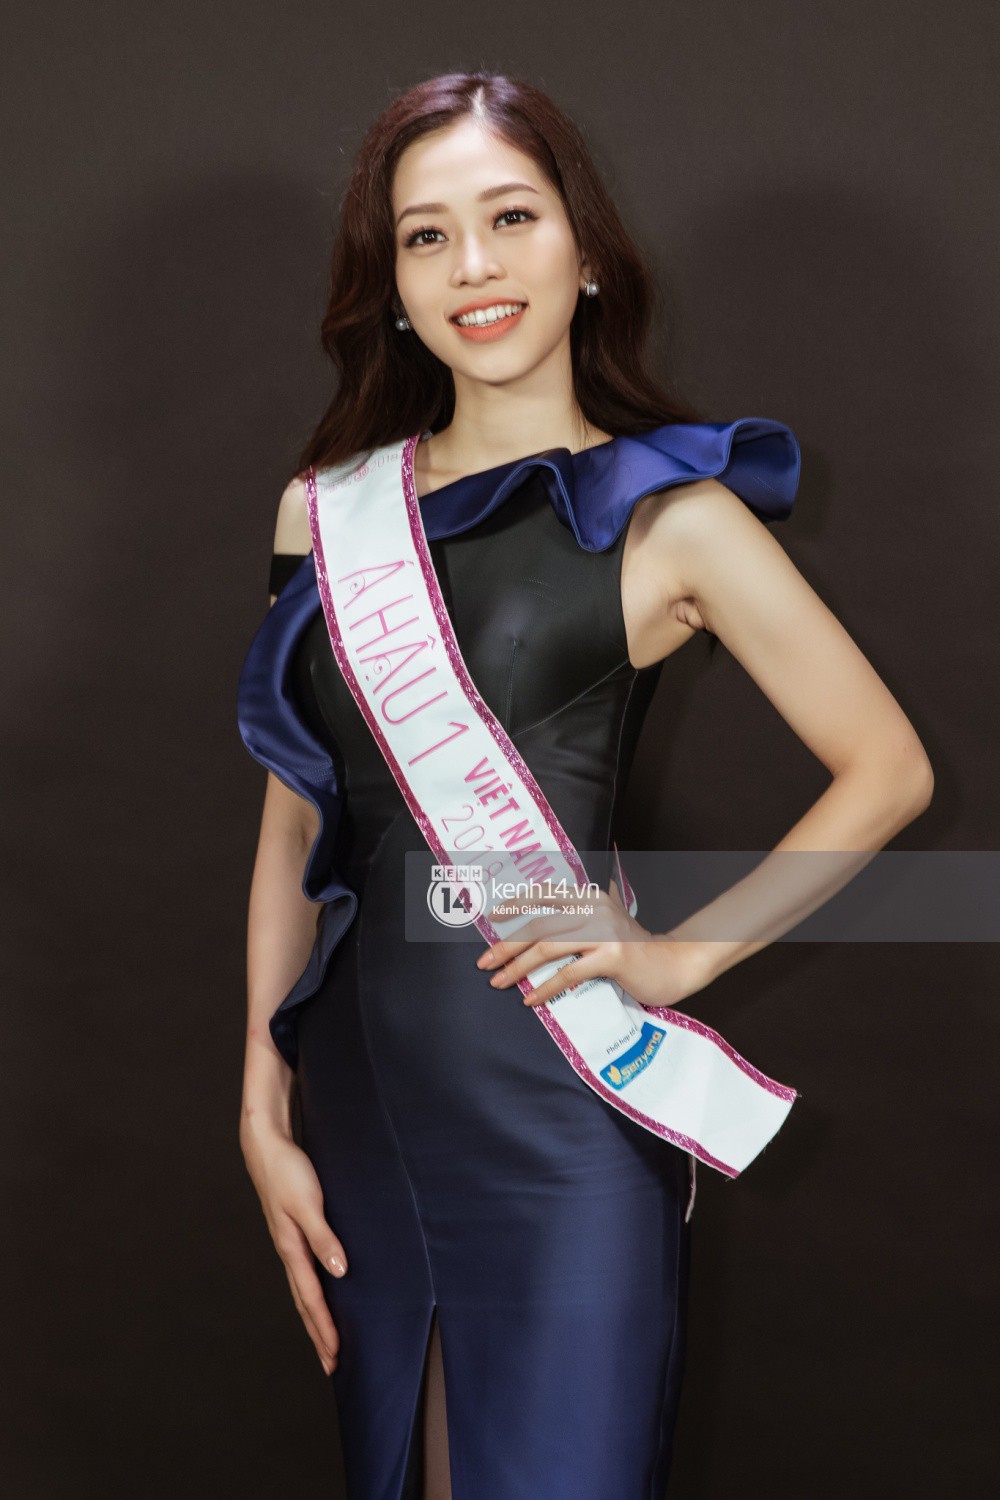 Ngắm cận vẻ đẹp của Top 3 Hoa hậu Việt Nam 2018: Mỹ nhân 2000 được khen sắc sảo, 2 nàng Á mười phân vẹn mười - Ảnh 9.